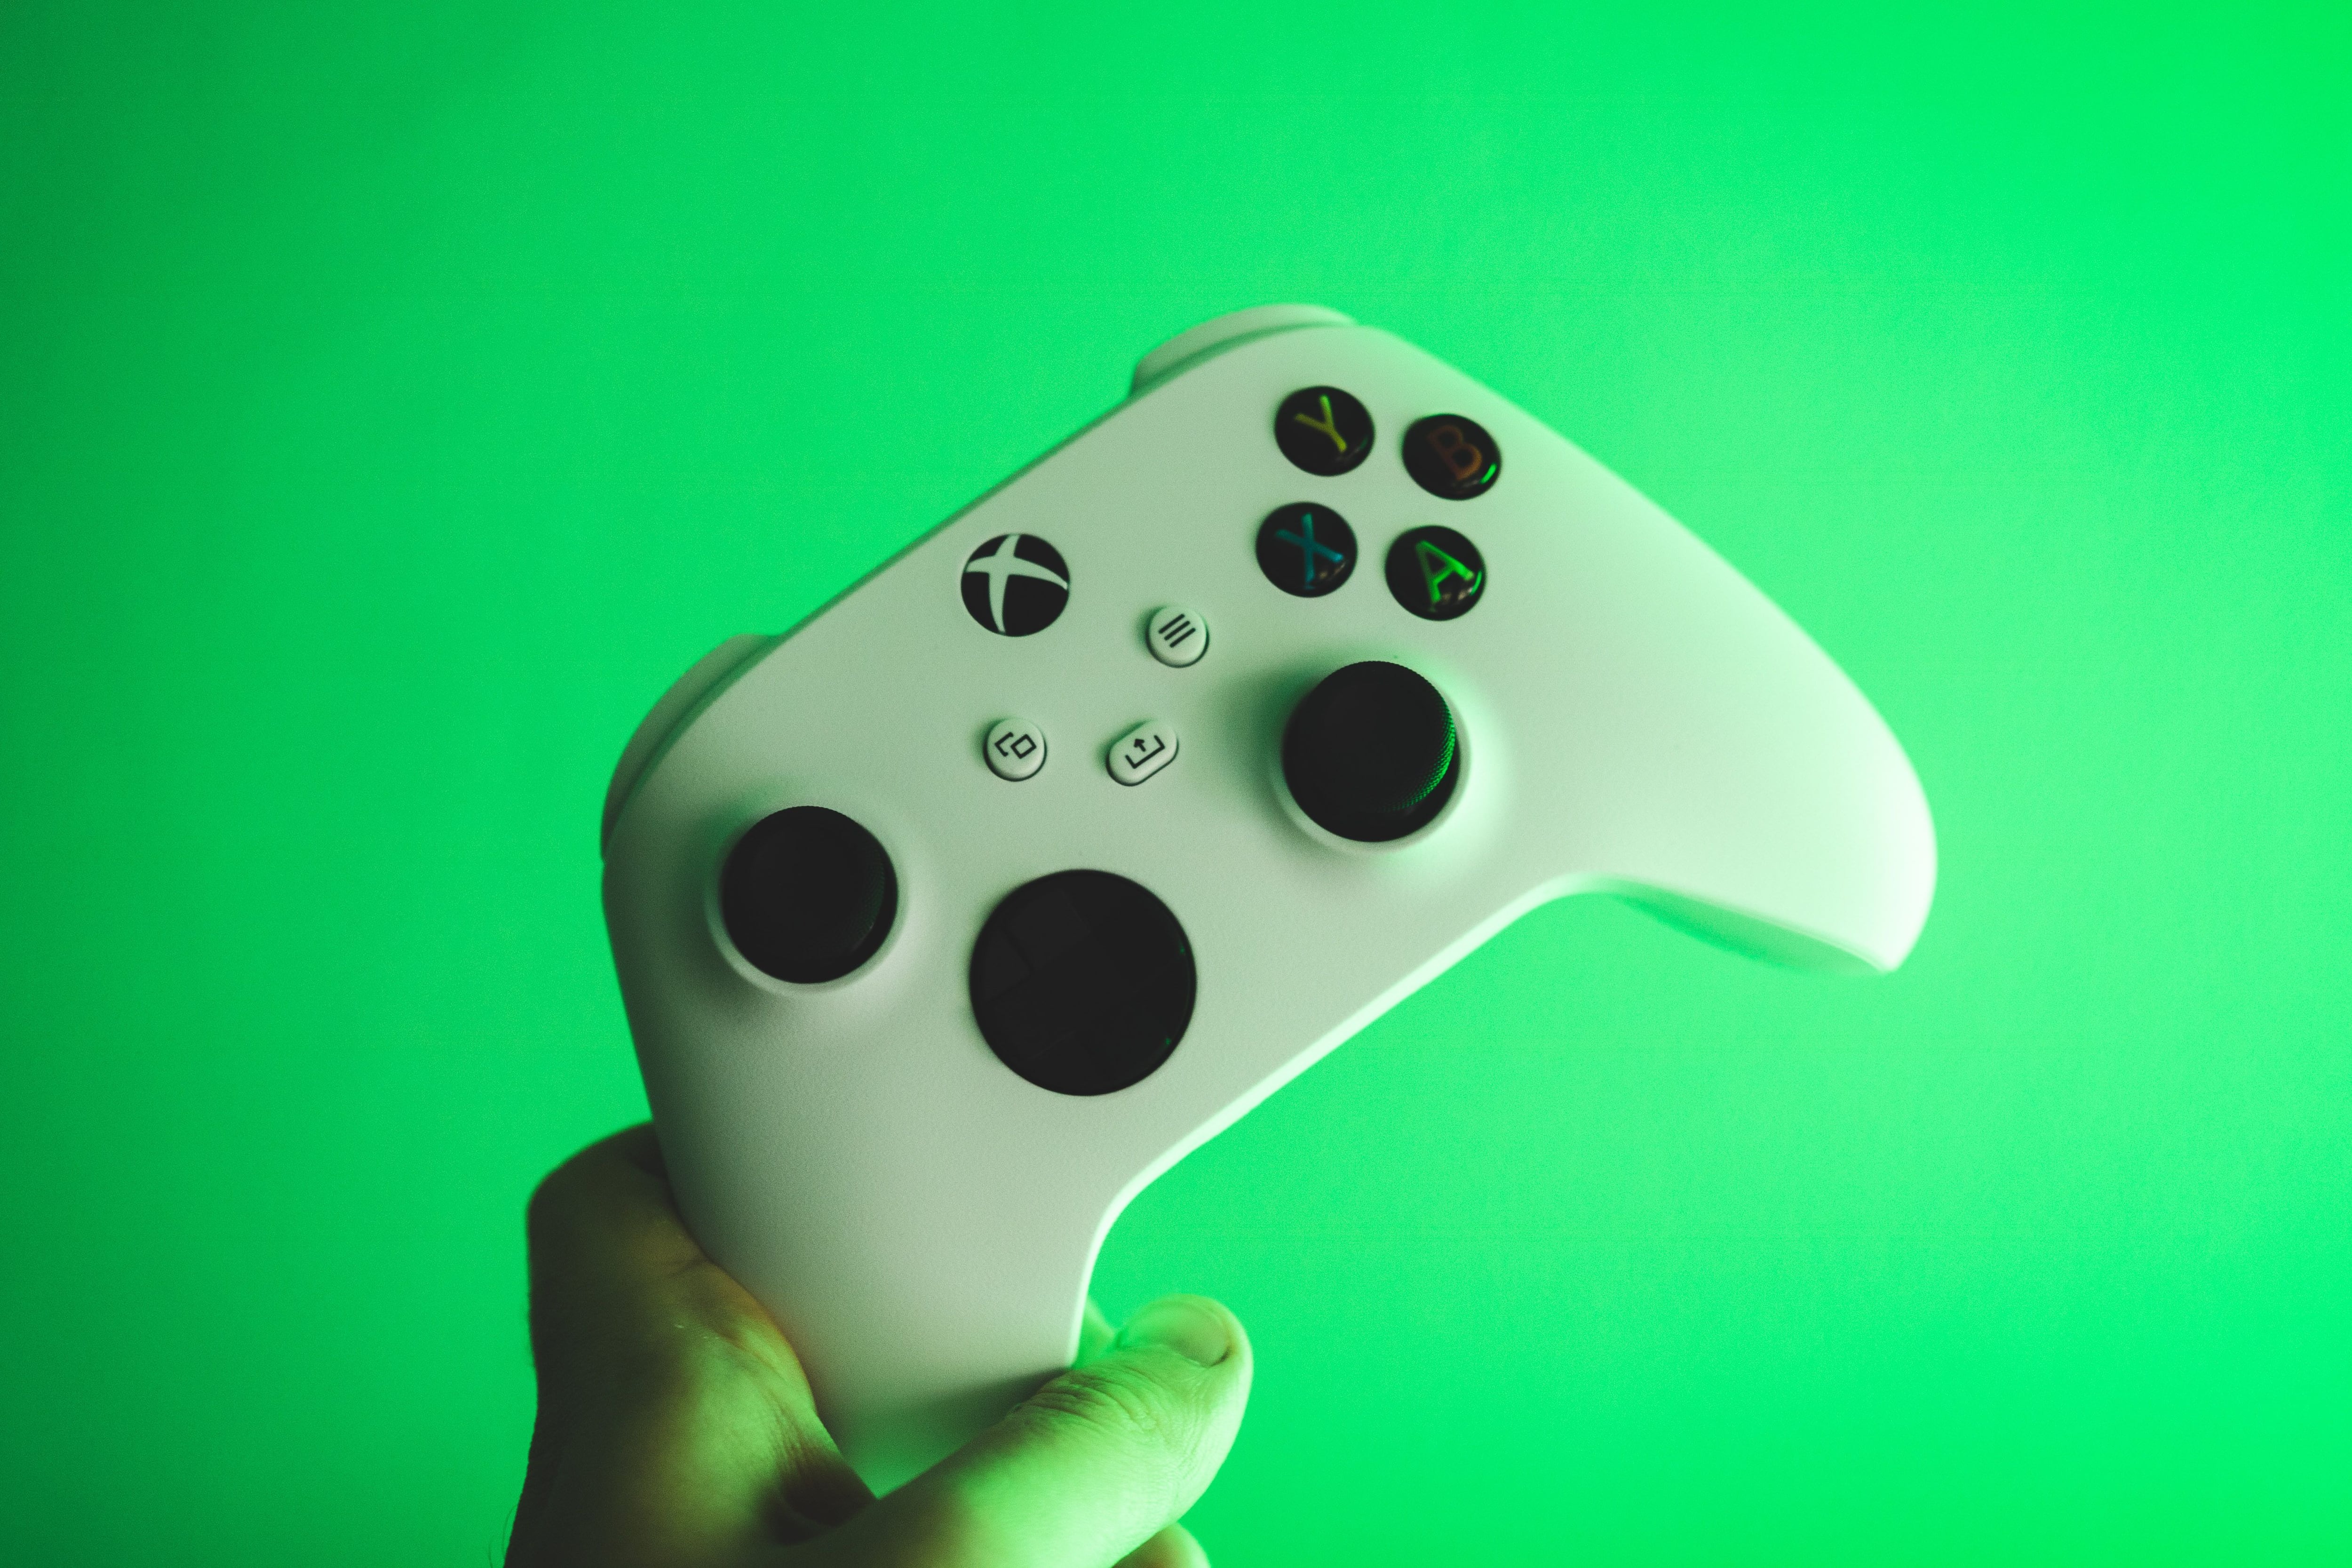 Apenas 1% de los jugadores de Xbox tienen un mal comportamiento. (Unsplash)